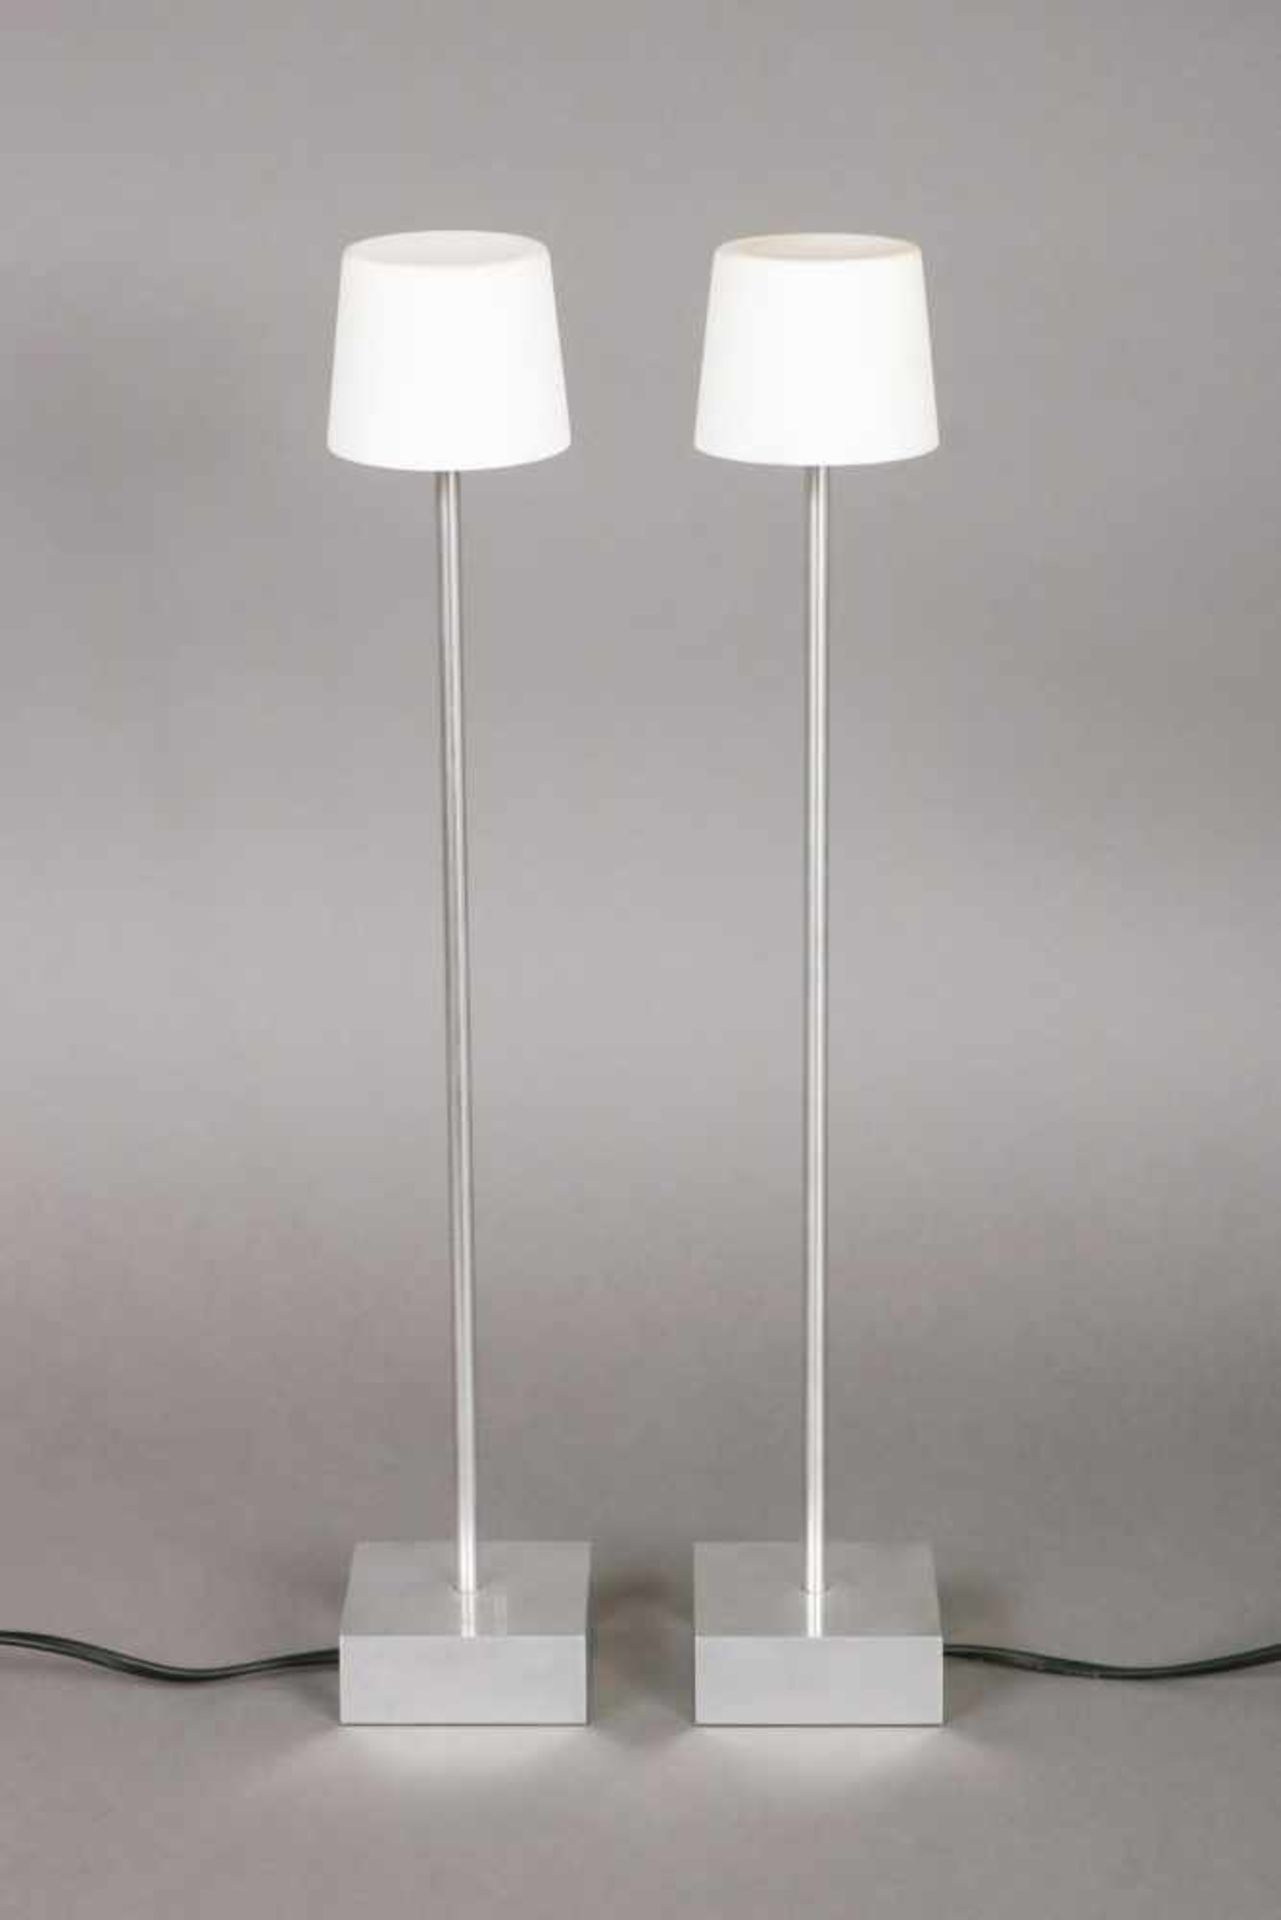 Paar Tischlampen ¨Anta¨ Alustand mit schlankem Gestänge, Milchporzellan-Schirme, je 1 elektrische